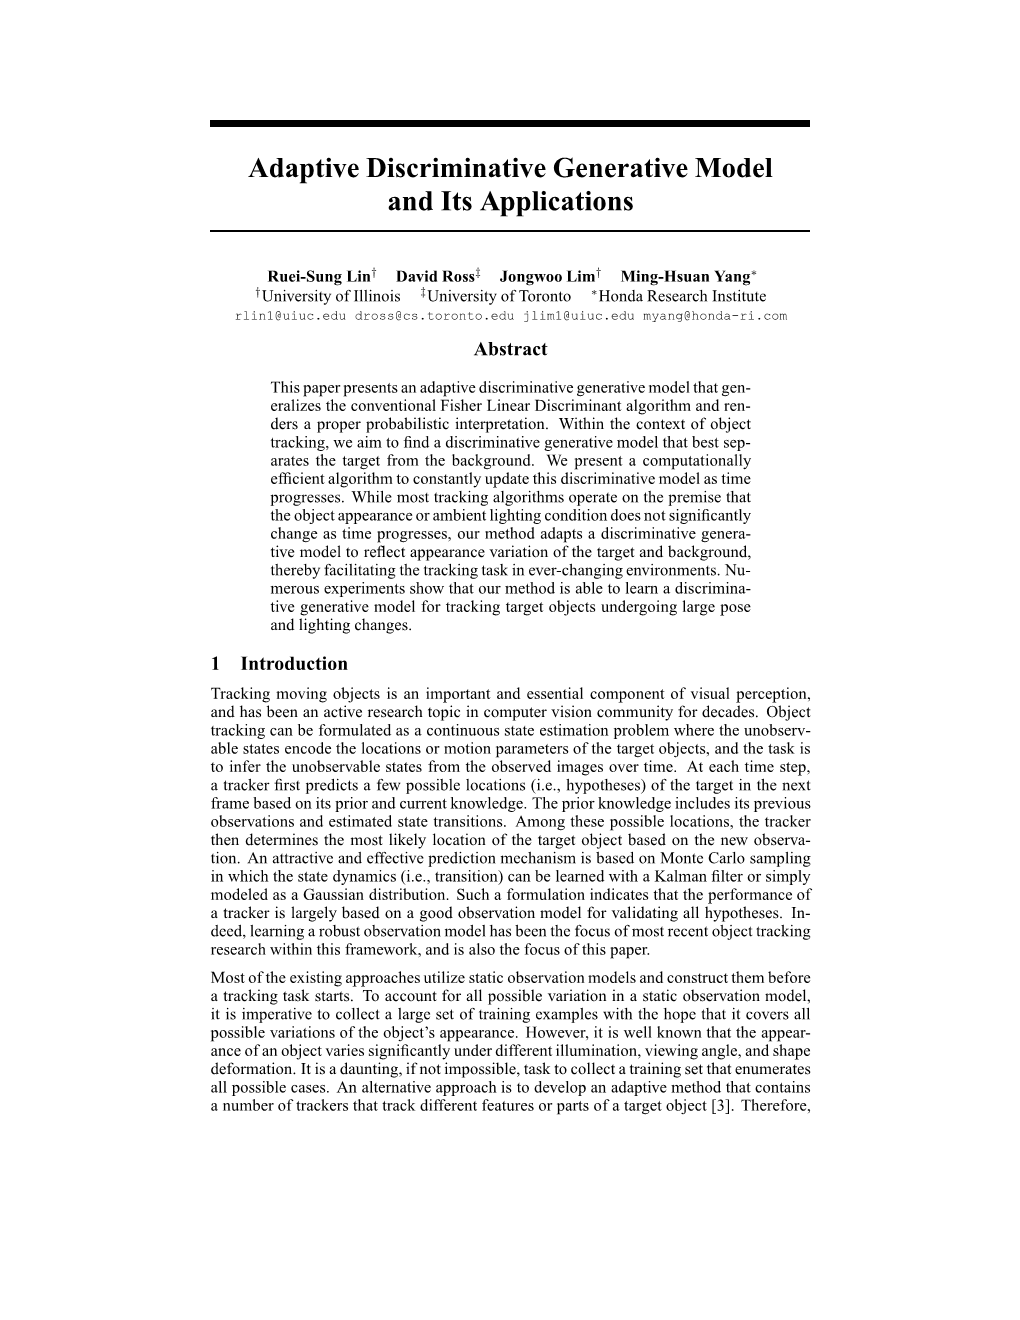 Adaptive Discriminative Generative Model and Its Applications